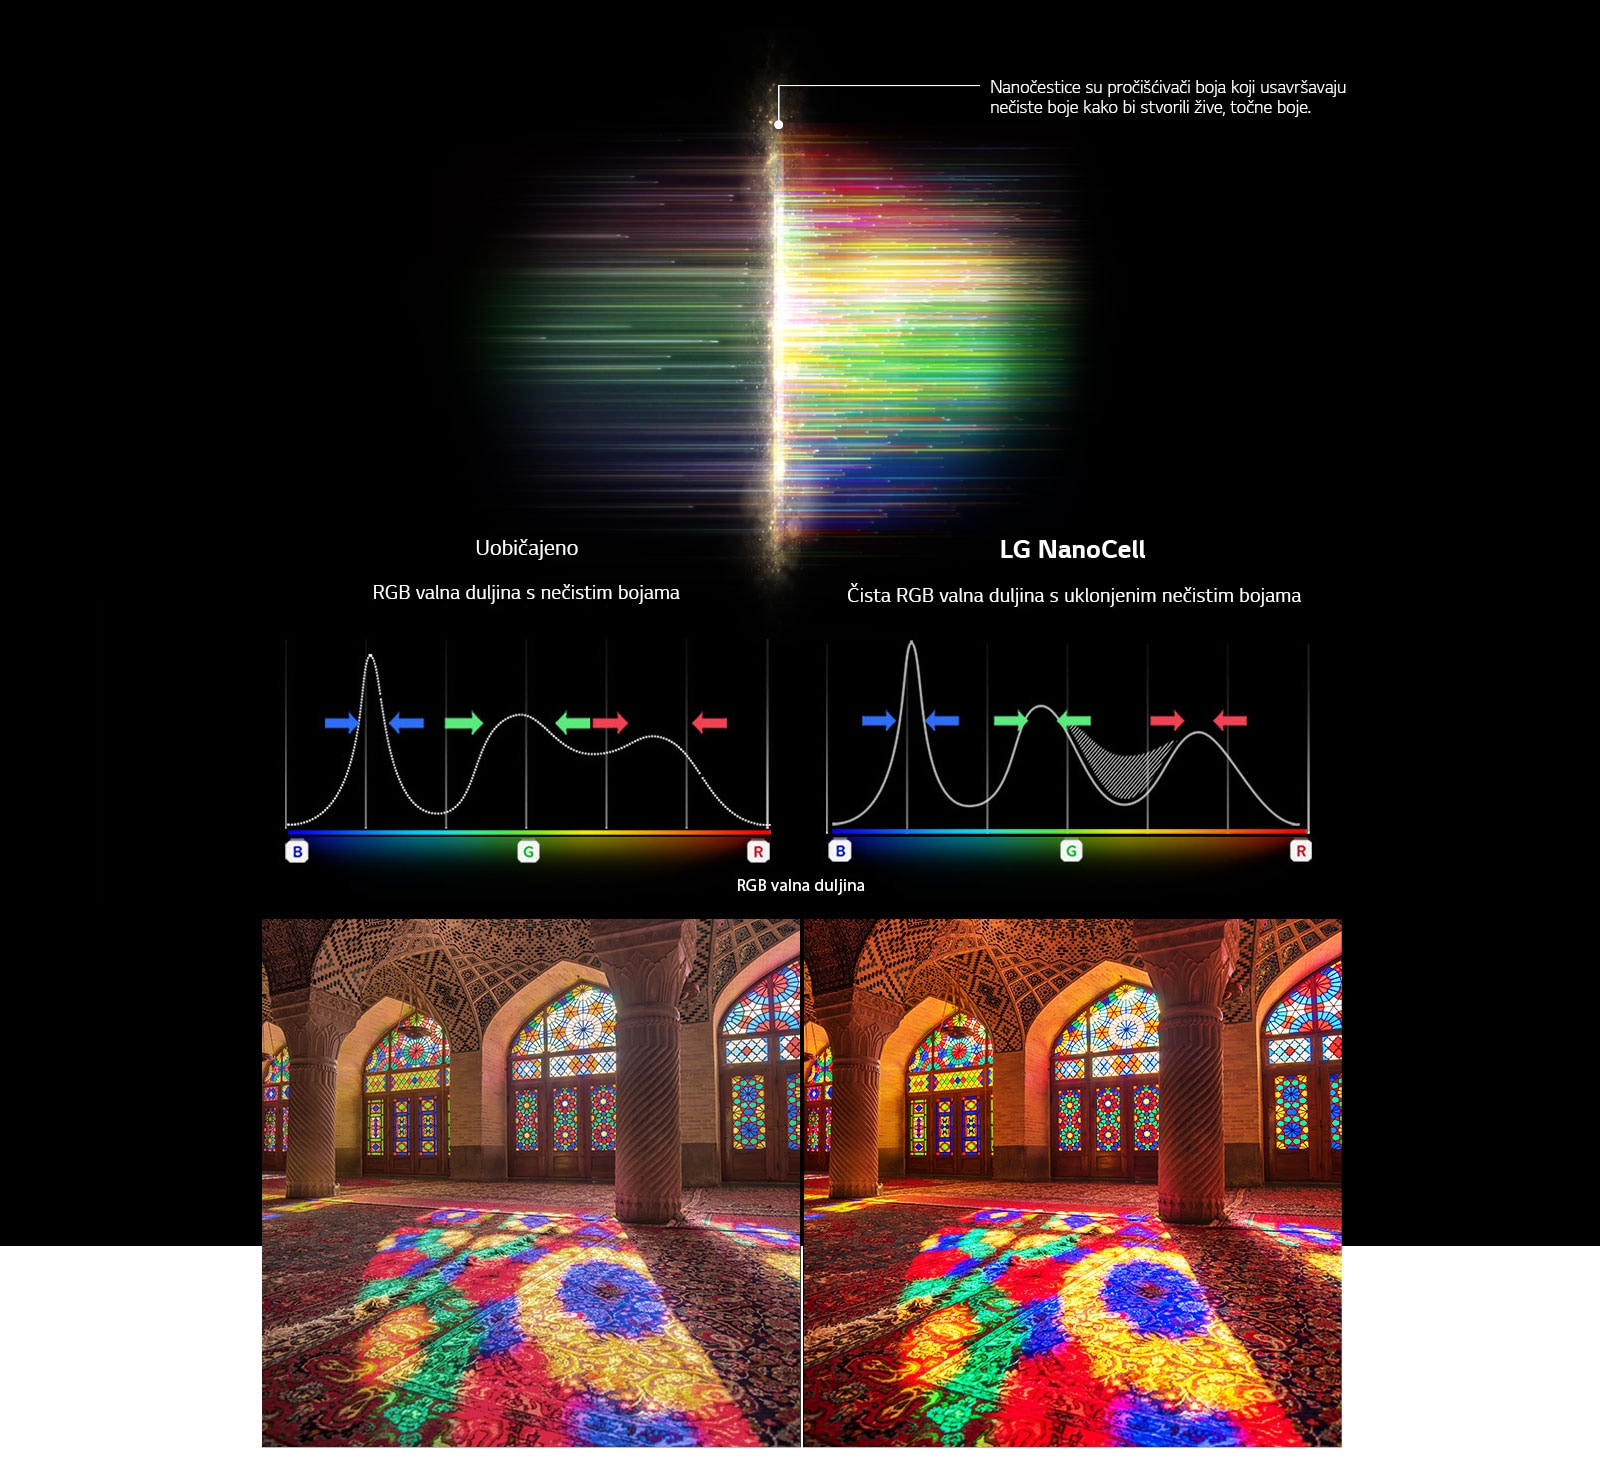 Grafico dello spettro RGB che mostra il filtro del colore lavato e le immagini che confrontano la purezza del colore ottenuta con la tecnologia comune e la tecnologia NanoCell